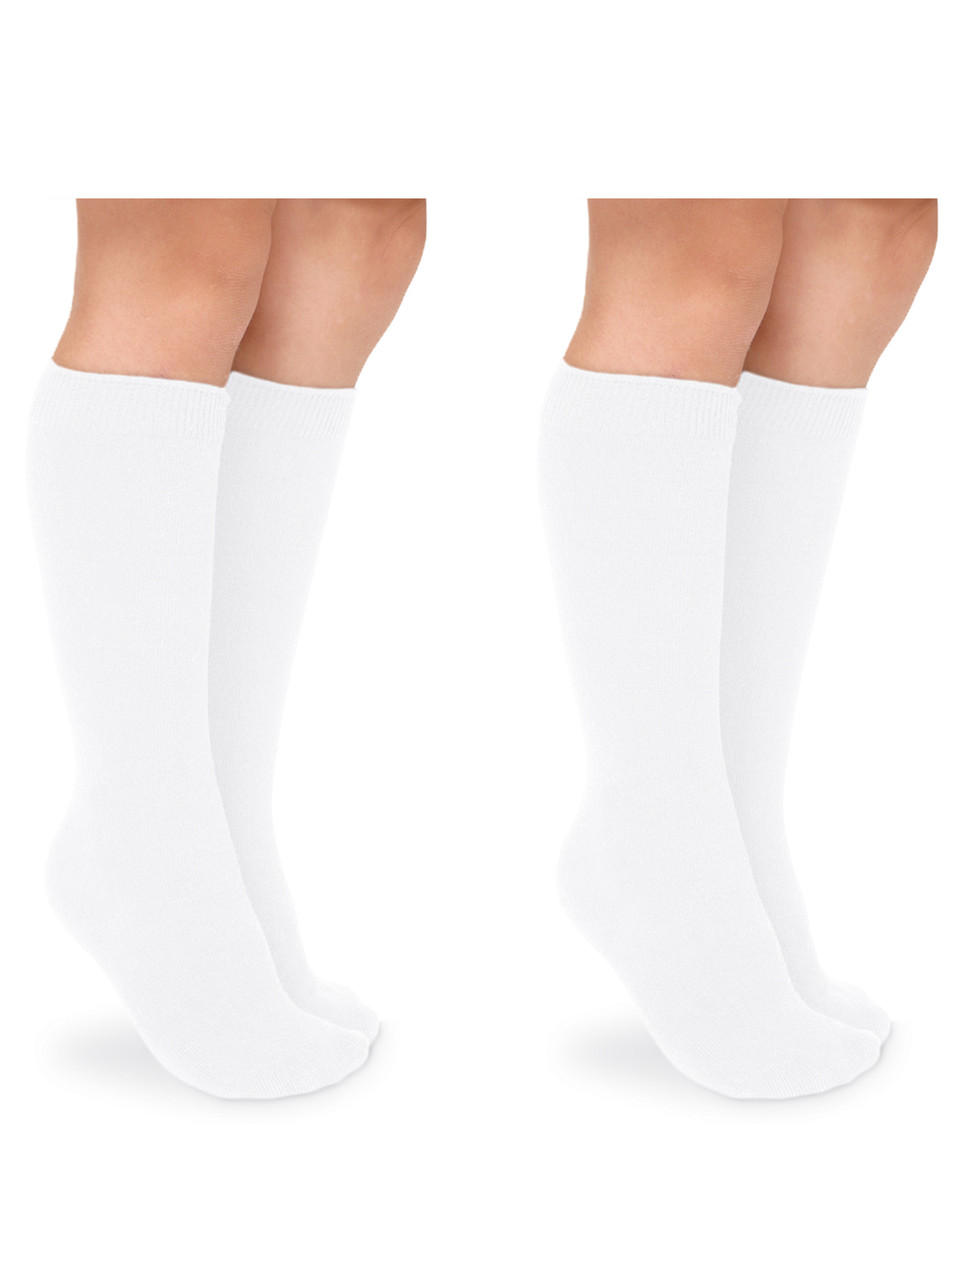 Jefferies Socks Non-Binding Quarter Socks 2 Pair Pack Large White